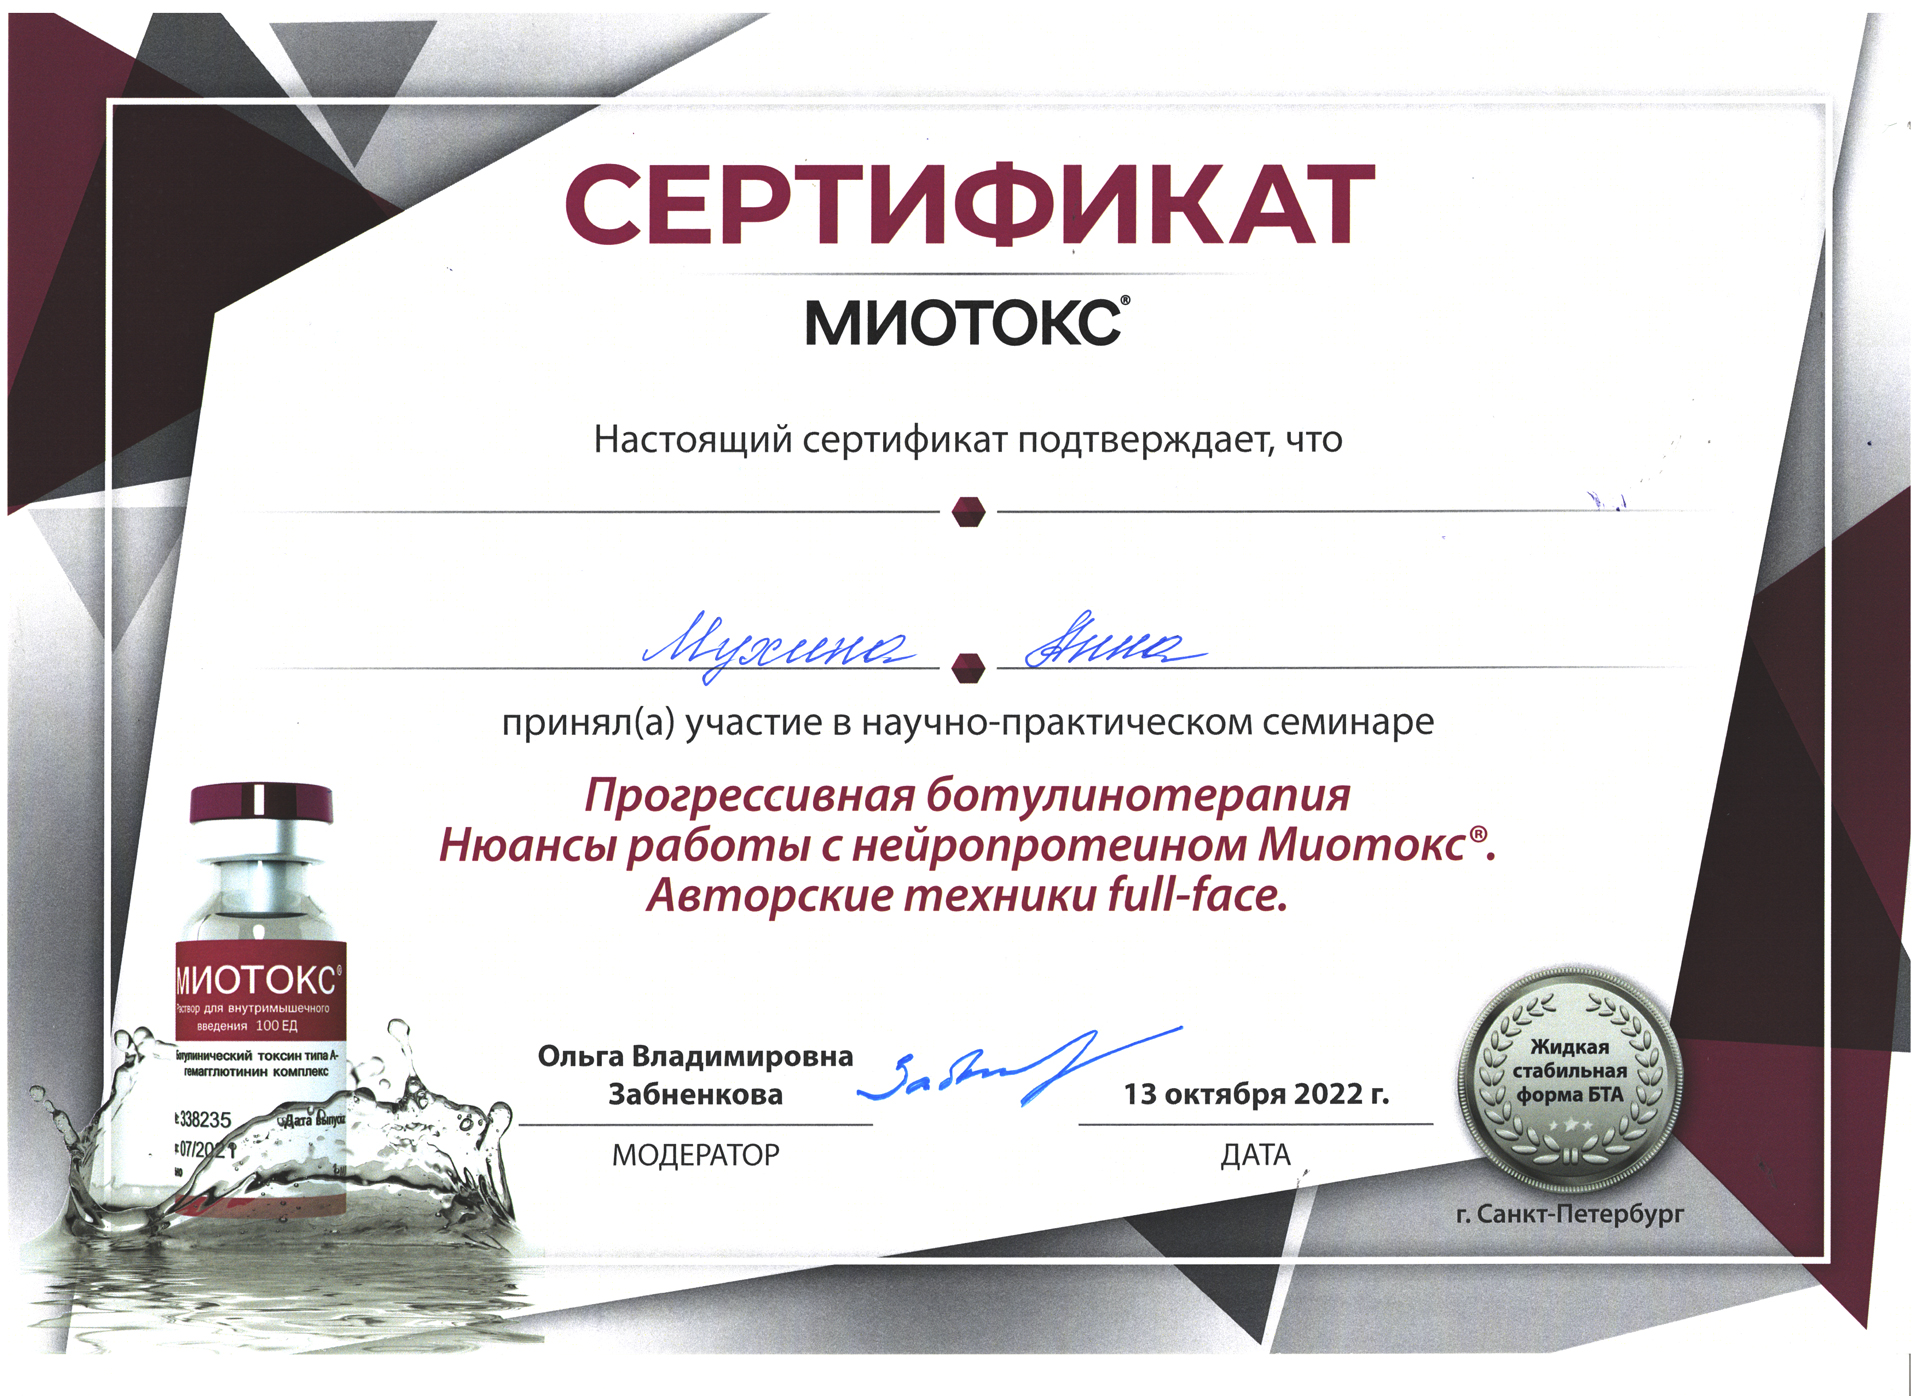 Сертификат — Семинар «Прогрессивная ботулинотерапия». Мухина Анна Михайловна